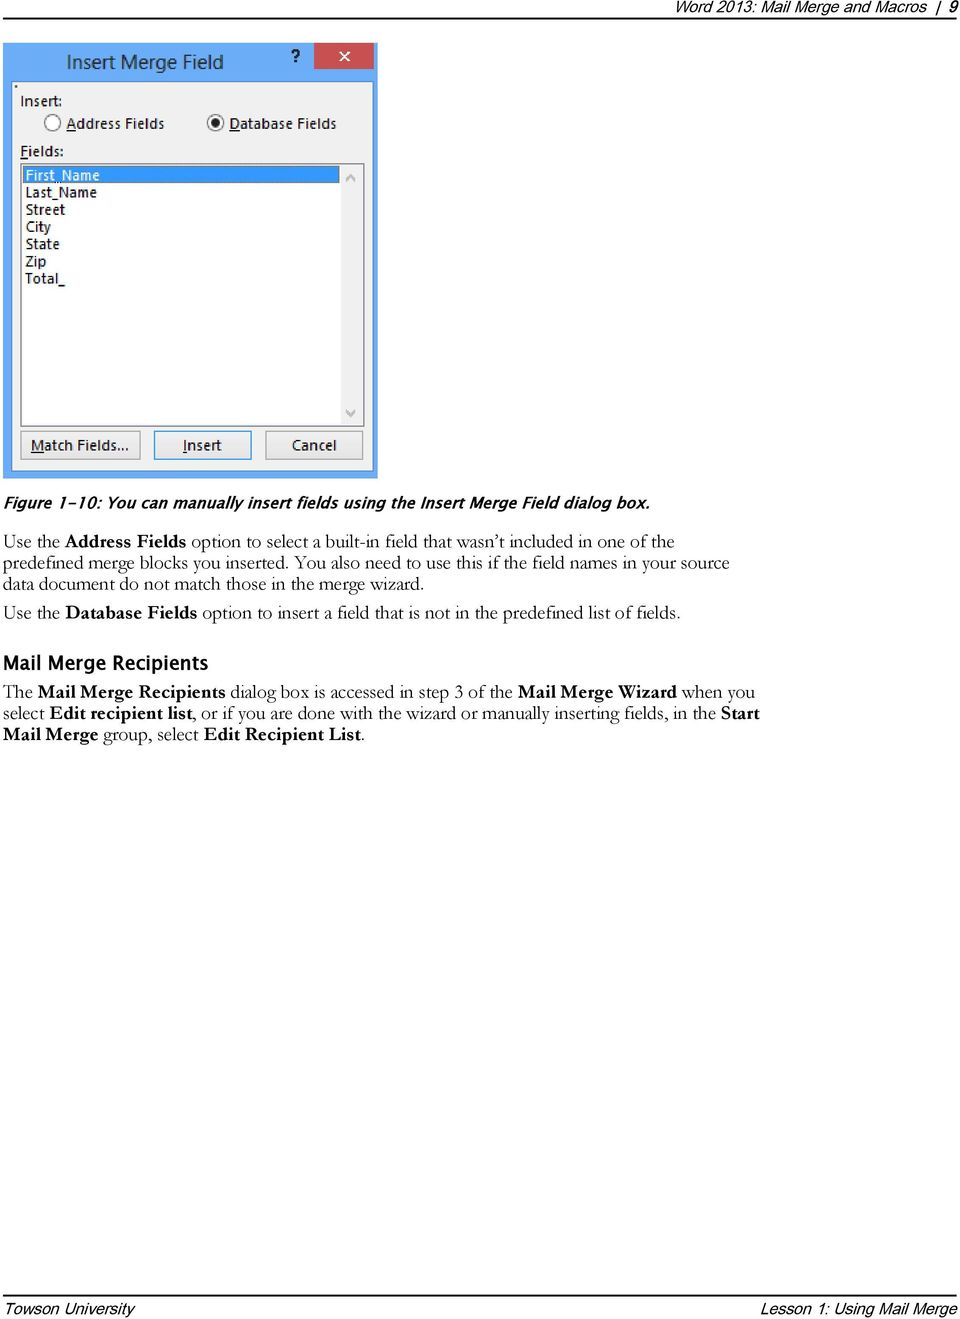 mail merge tutorial word 2013